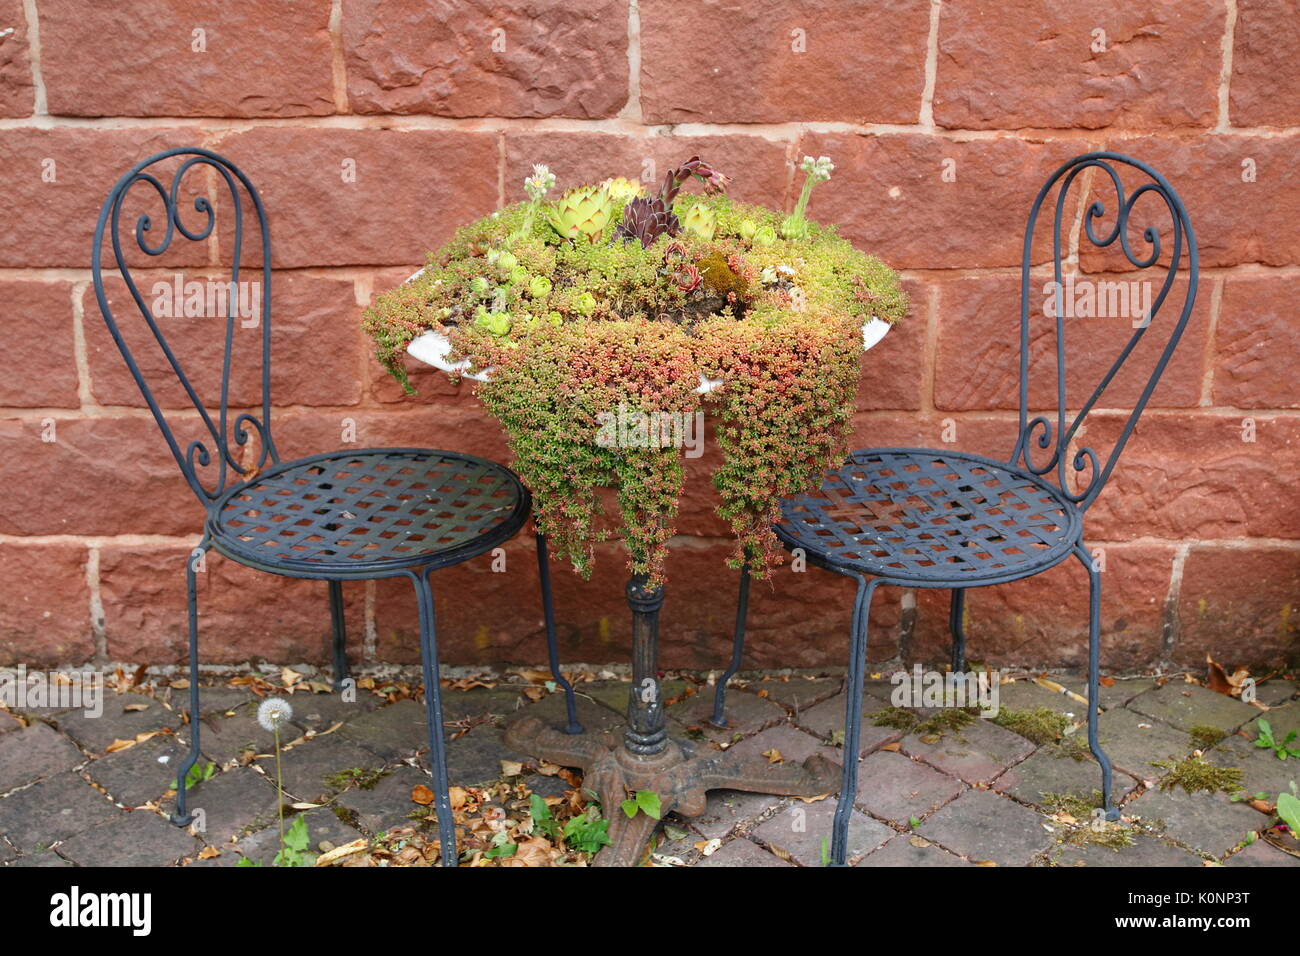 Hauswurz und Steinbrech wachsen wild und romantisch auf einem alten Stuhl und Tisch Stock Photo